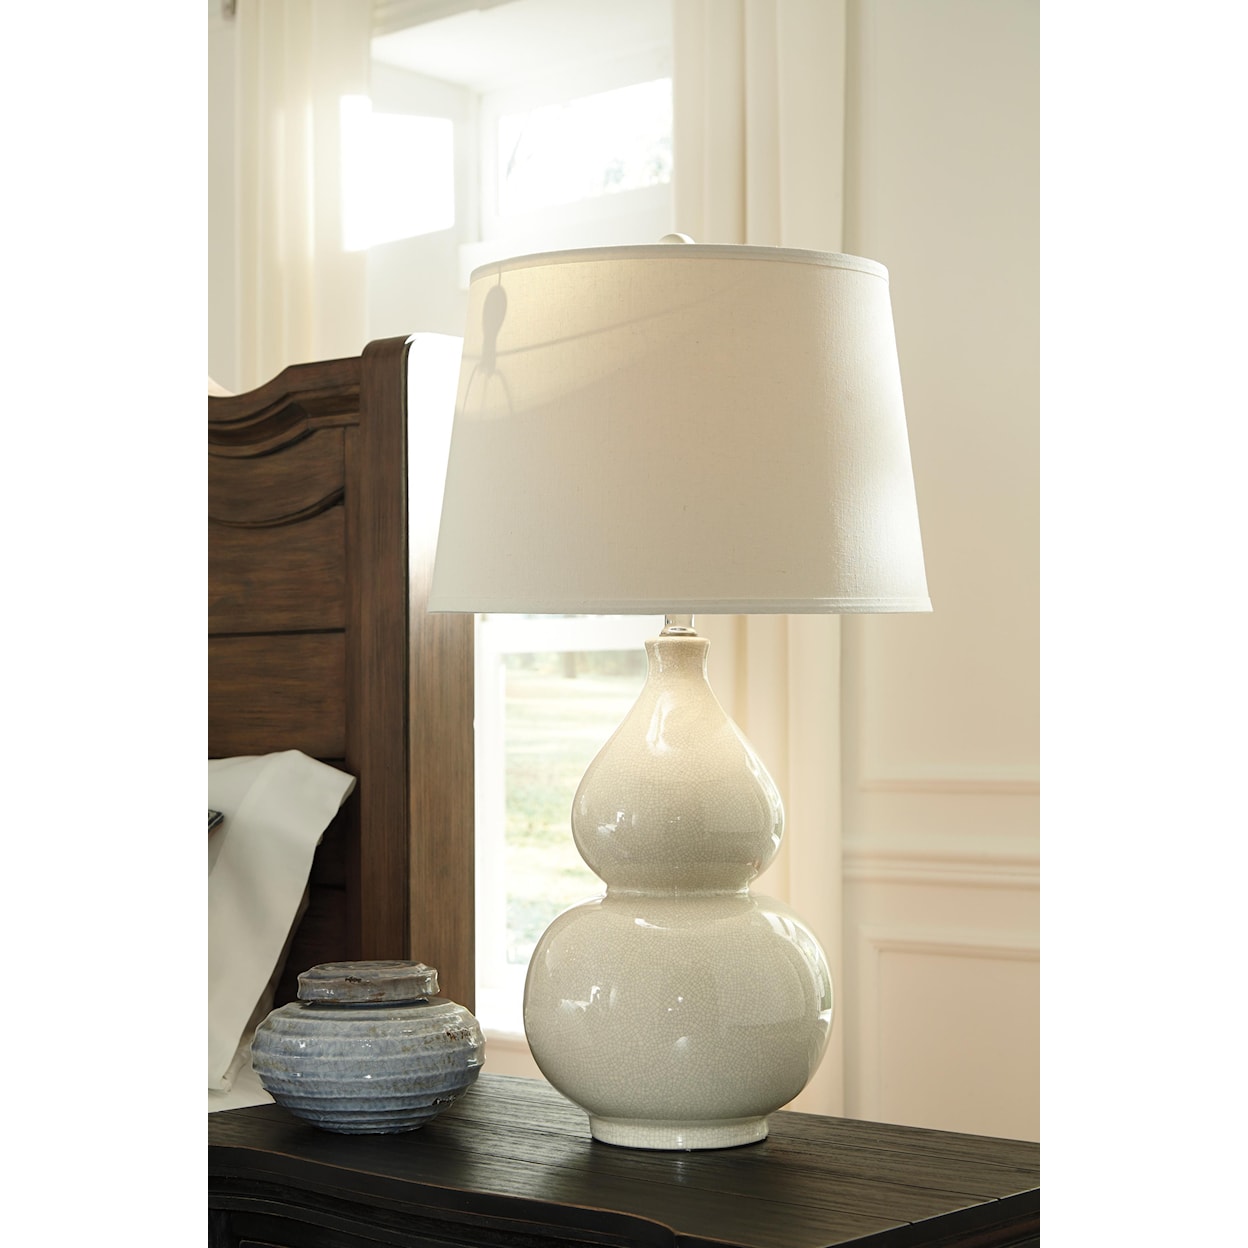 Signature Design Lamps - Contemporary Ceramic Table Lamp 